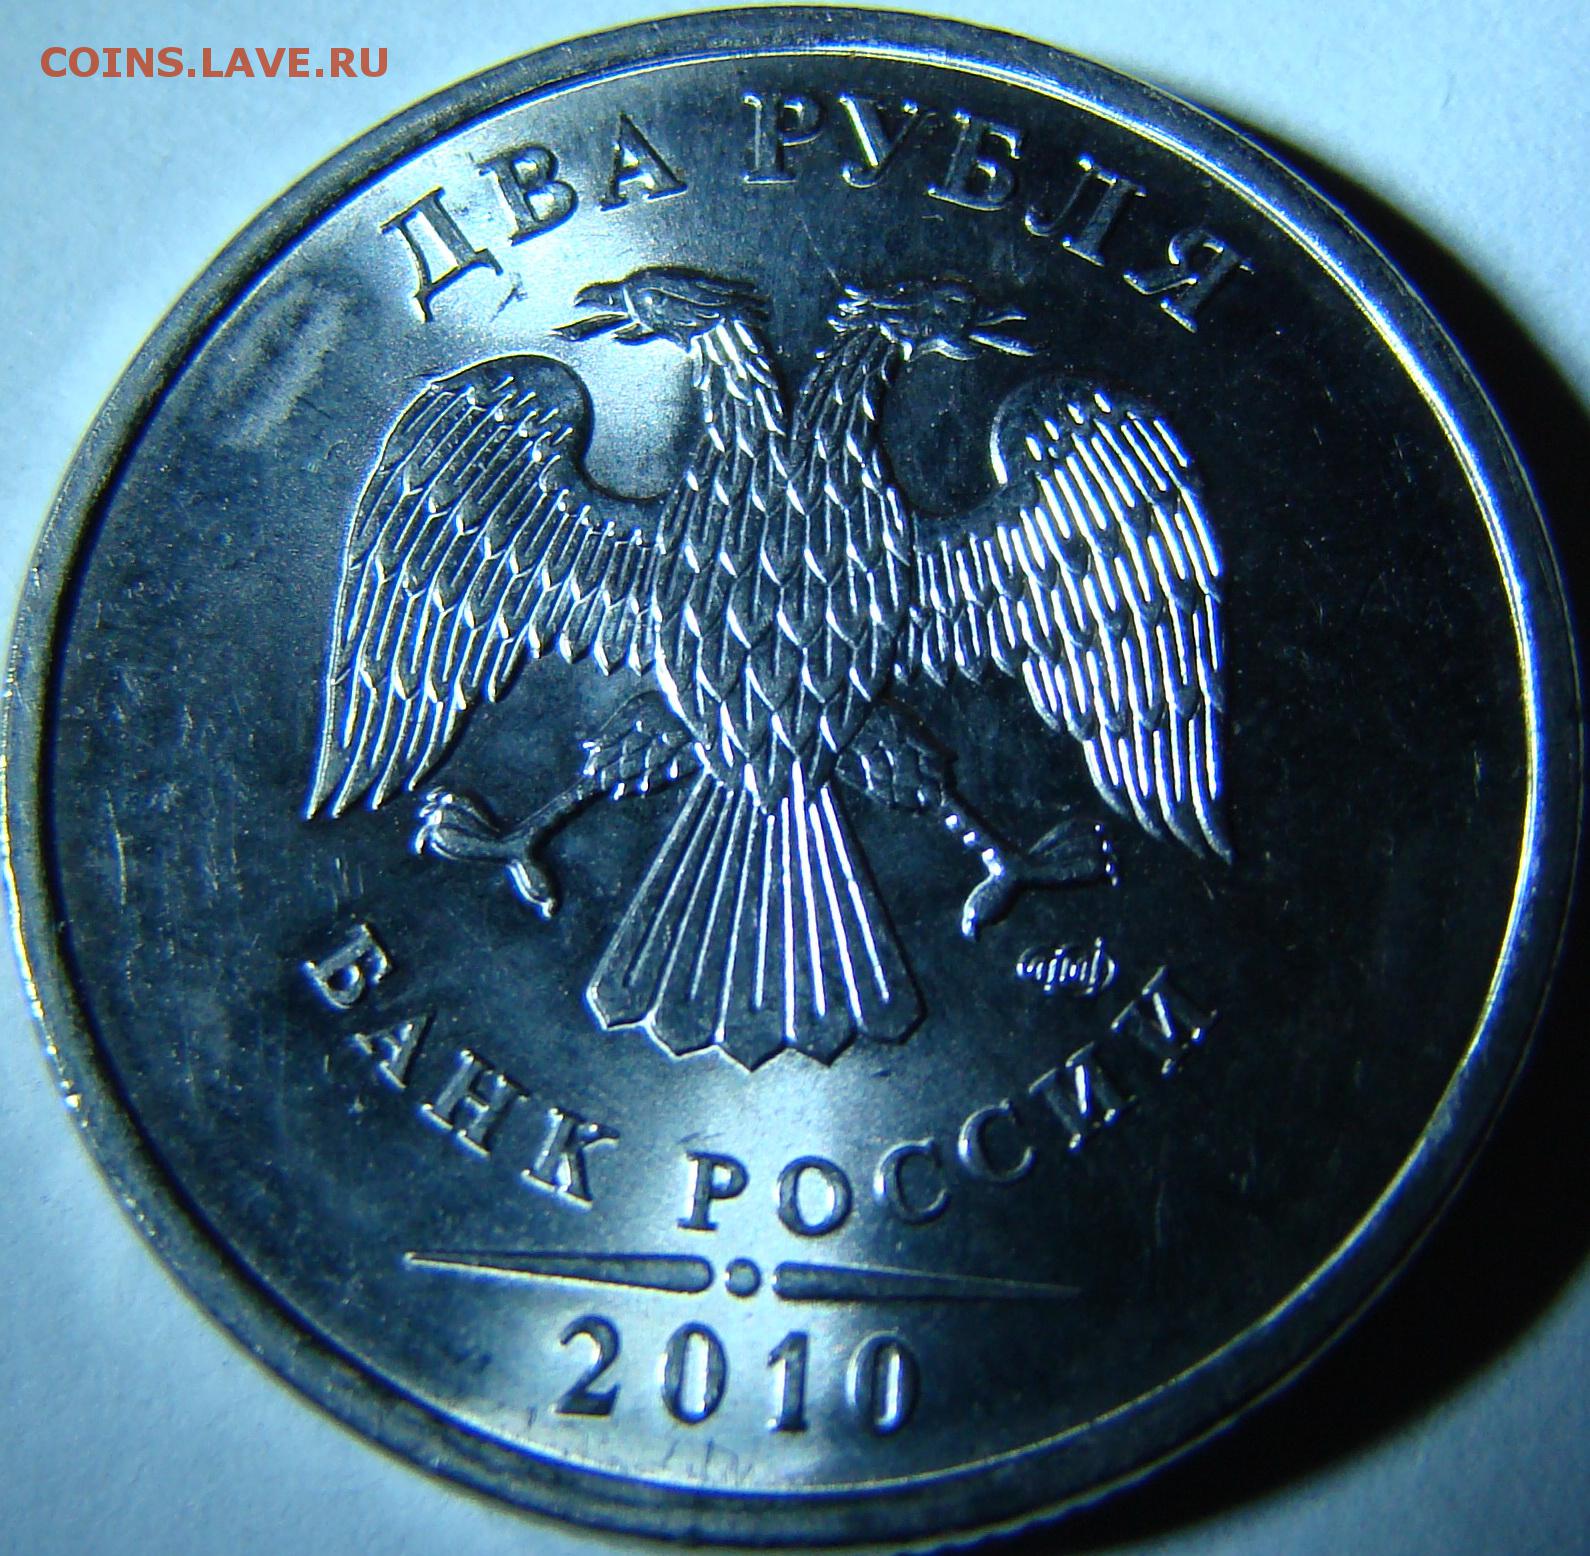 5 рублей 2010 цена. 5 Рублей 2010 СПМД. 2 Рубля 2010 СПМД. Пять рублей. Два рубля 2003 года СМПД.